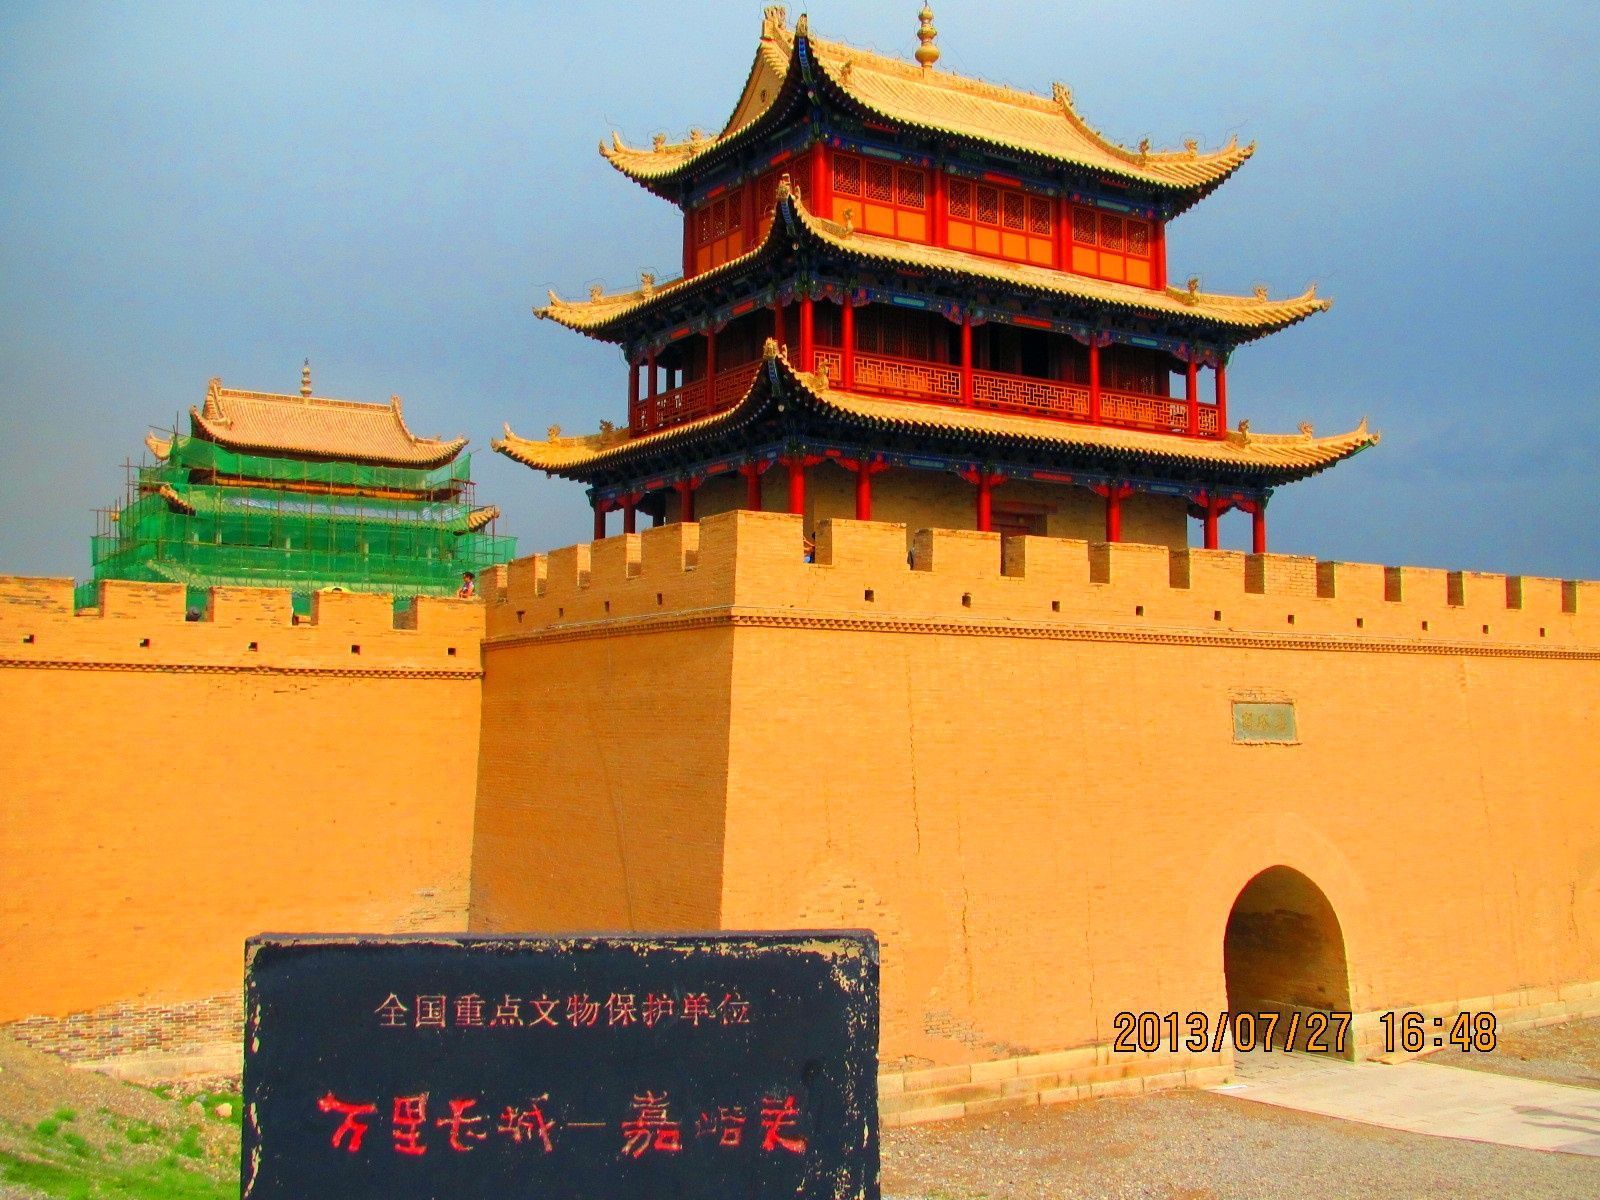 Gate of Jiayu Pass, Jiayuguan, Gansu province, China [3264x2448] : r ...